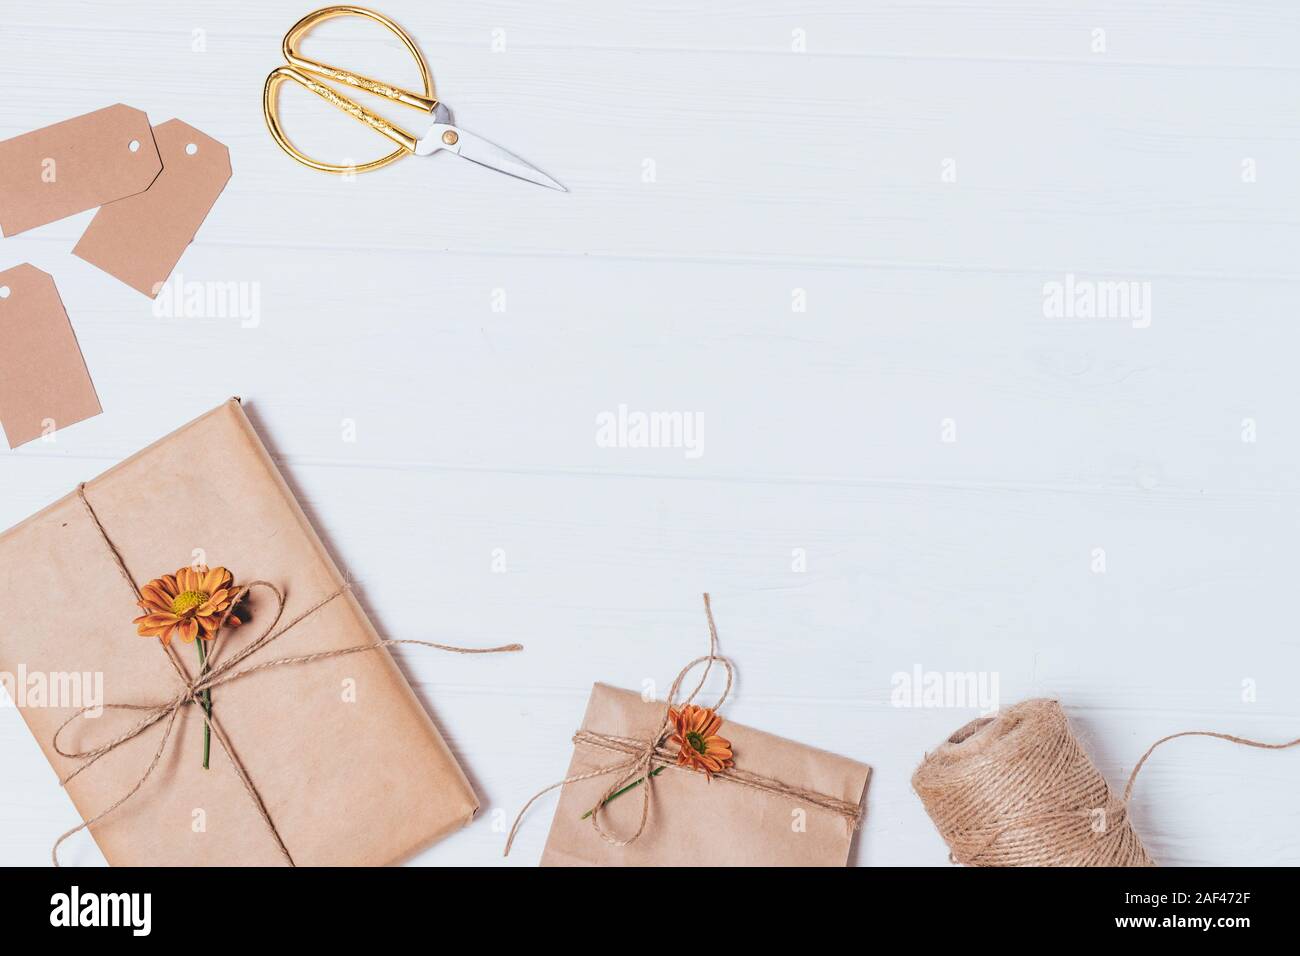 Handgefertigte Geschenk verpacken, Ansicht von oben. Braunes Papier Boxen  mit Jute Seil gebunden, mit frischen Blumen auf Weiß Tisch mit Kopie  eingerichtet Stockfotografie - Alamy